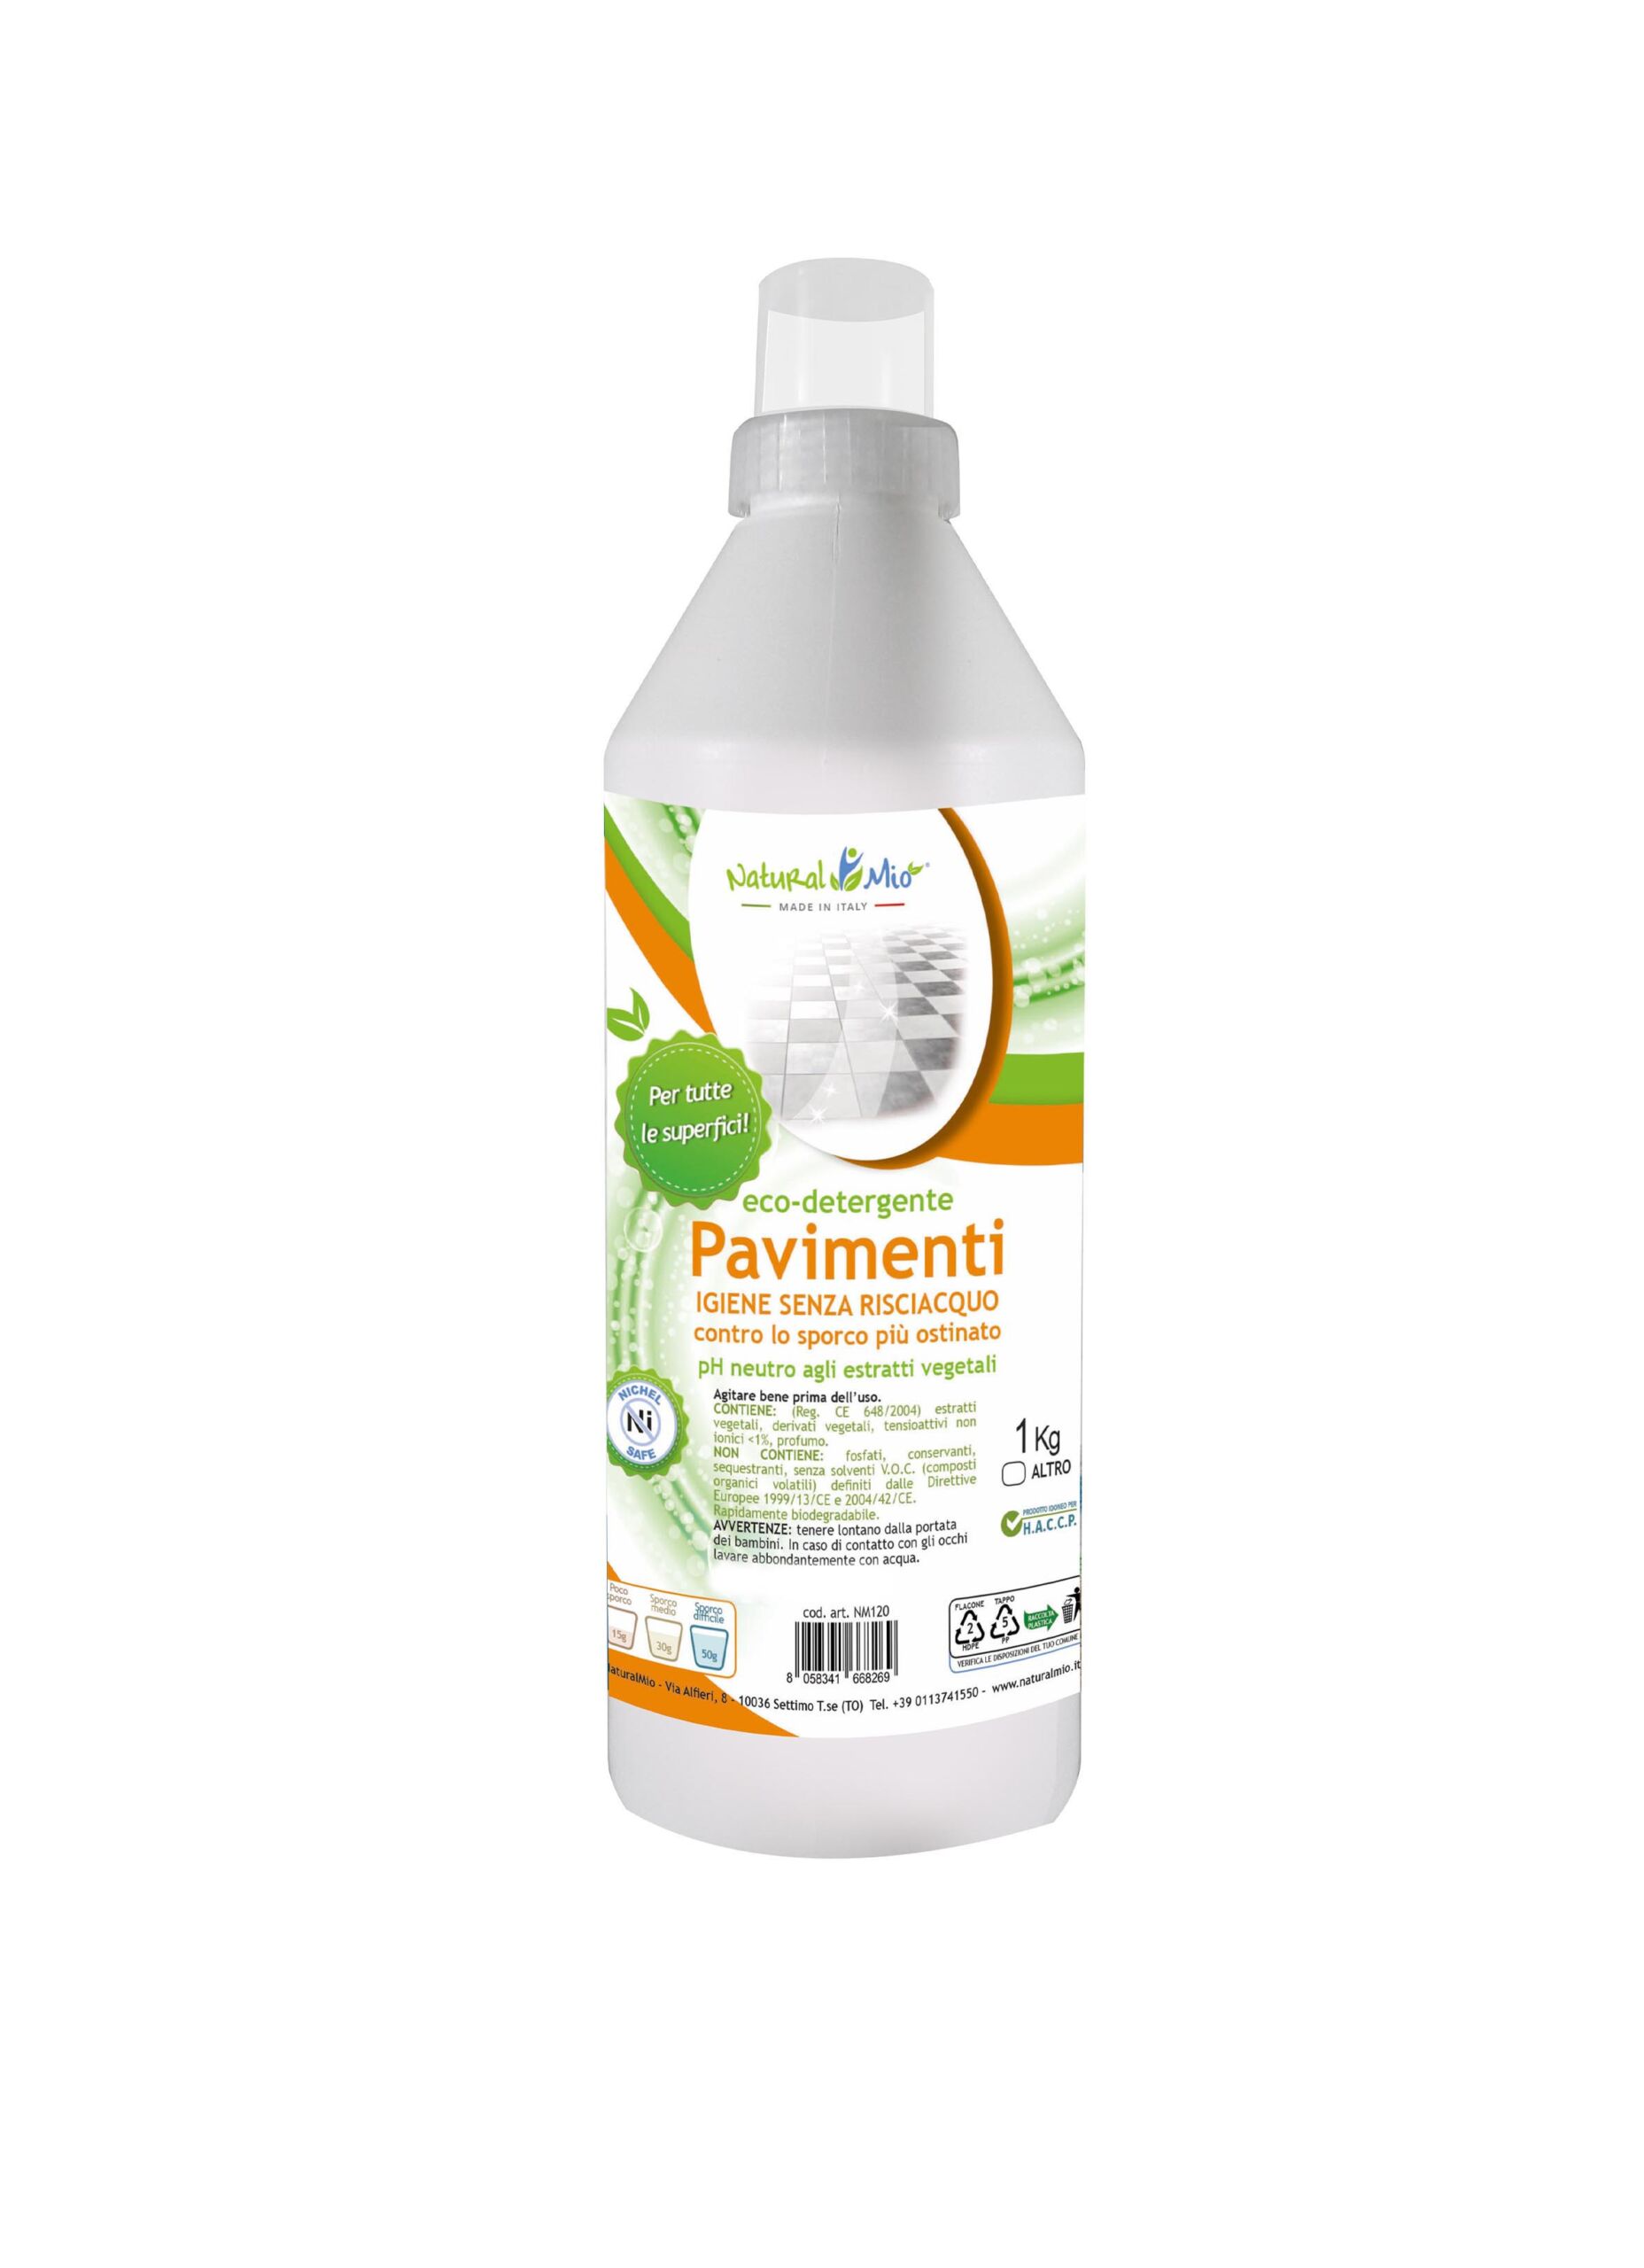 Eco-detergente pavimenti - Naturalmio